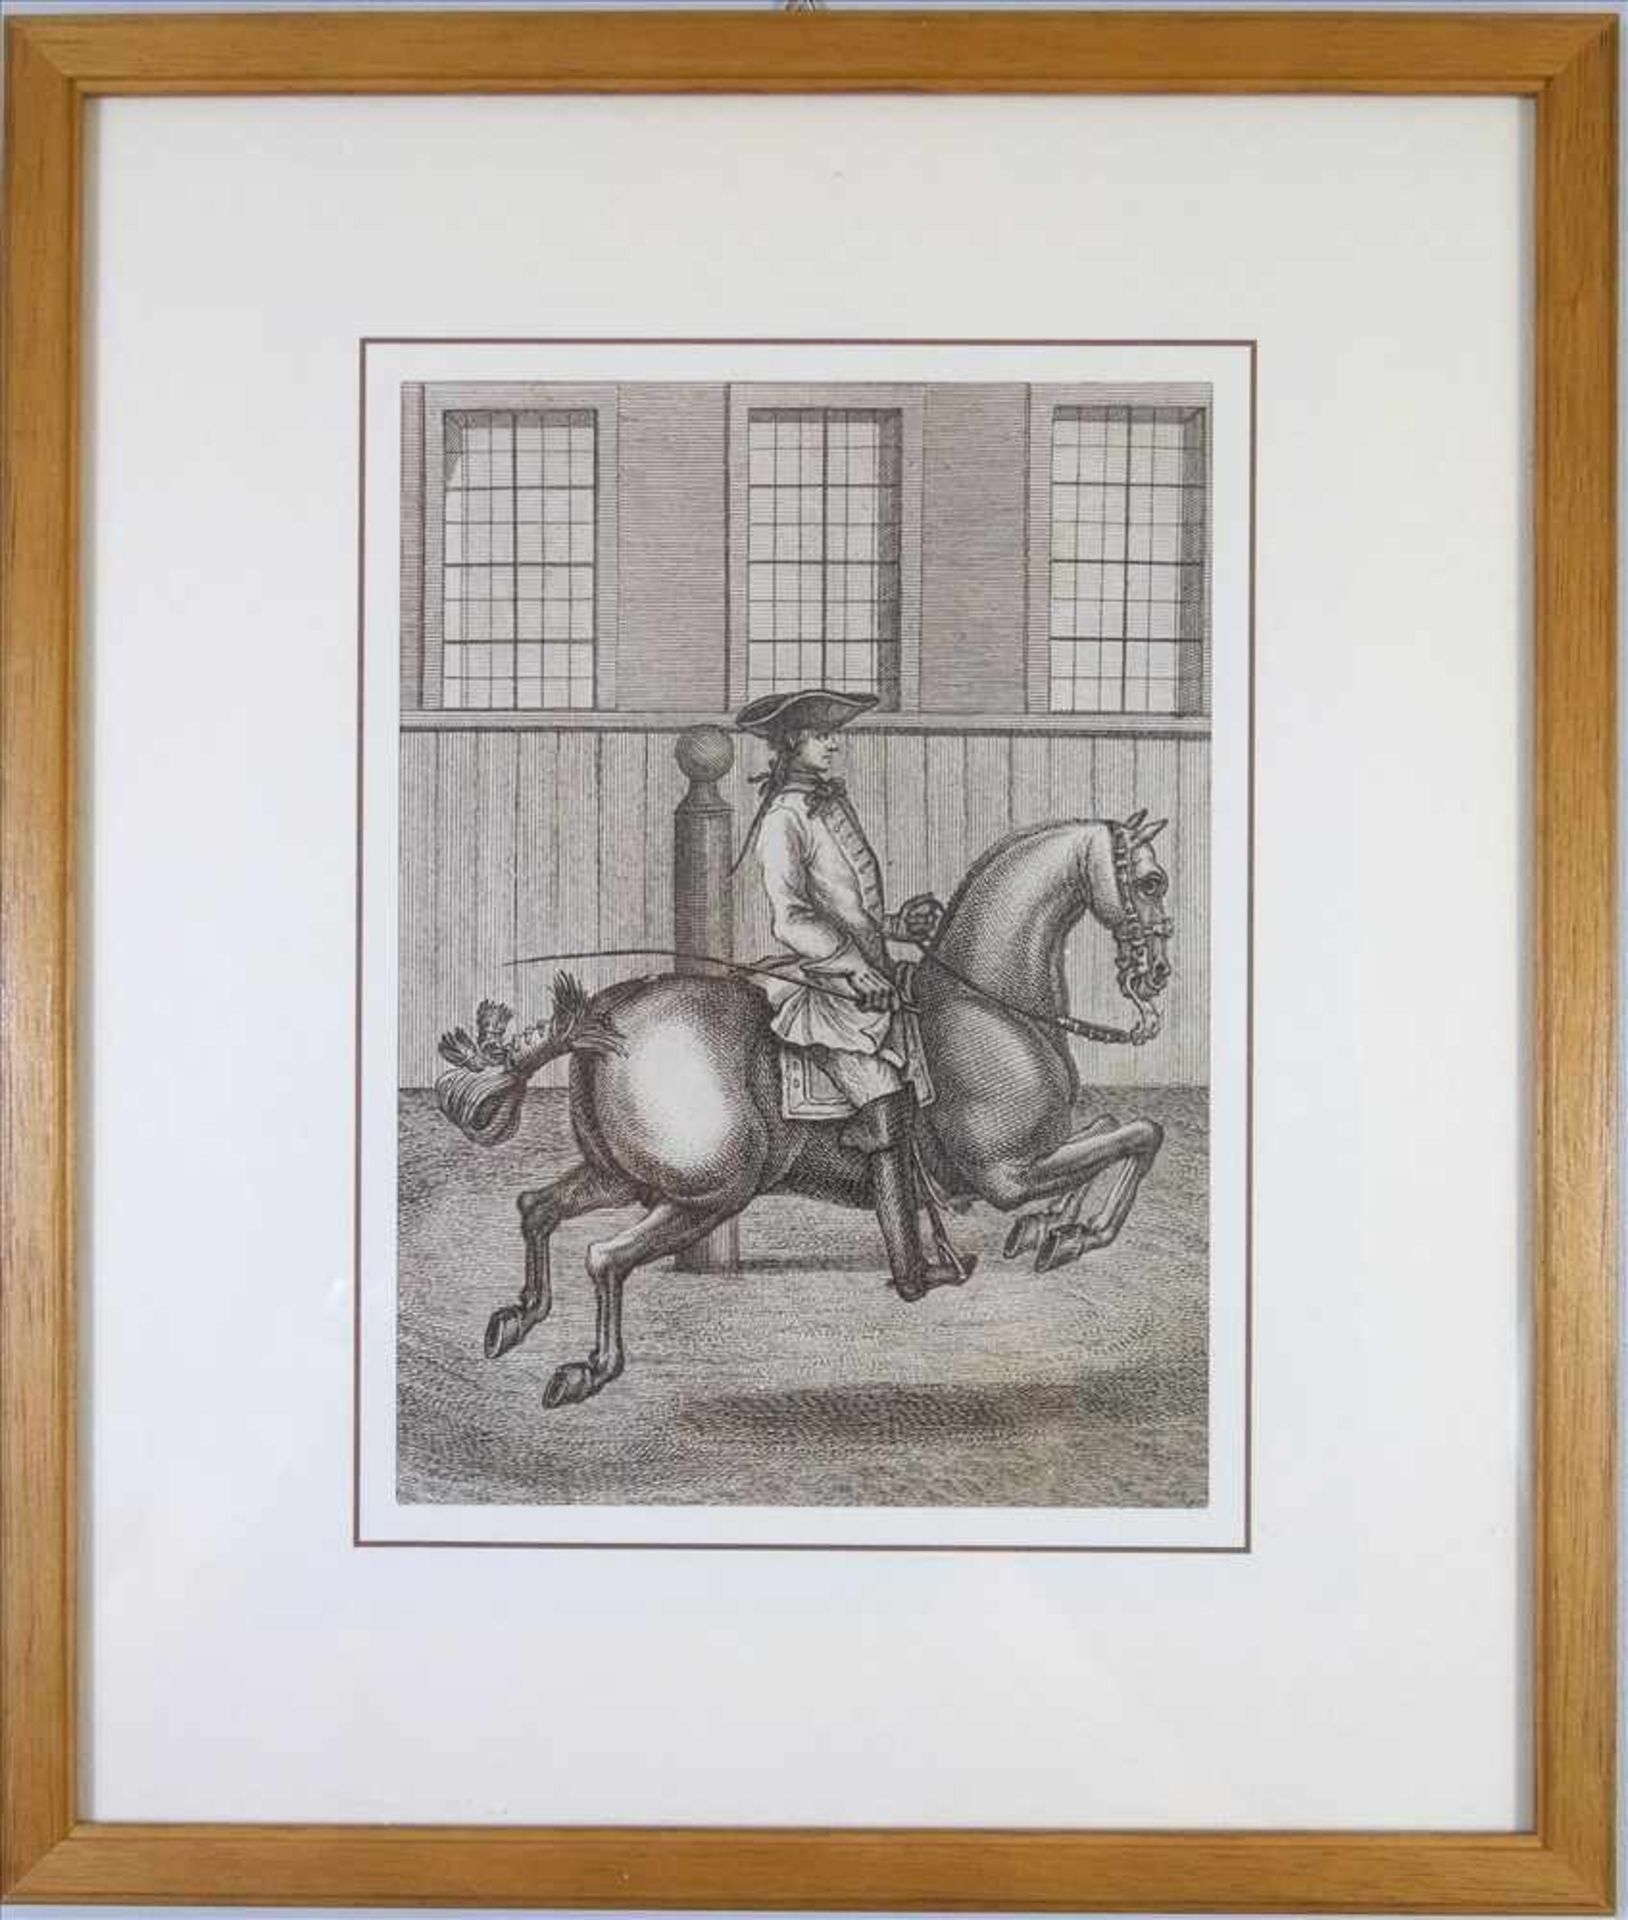 wohl Johann Elias Ridinger (1698-1767), Reiter zu Pferd, aus dem Reitschule-Zyklus, 18. Jh.,